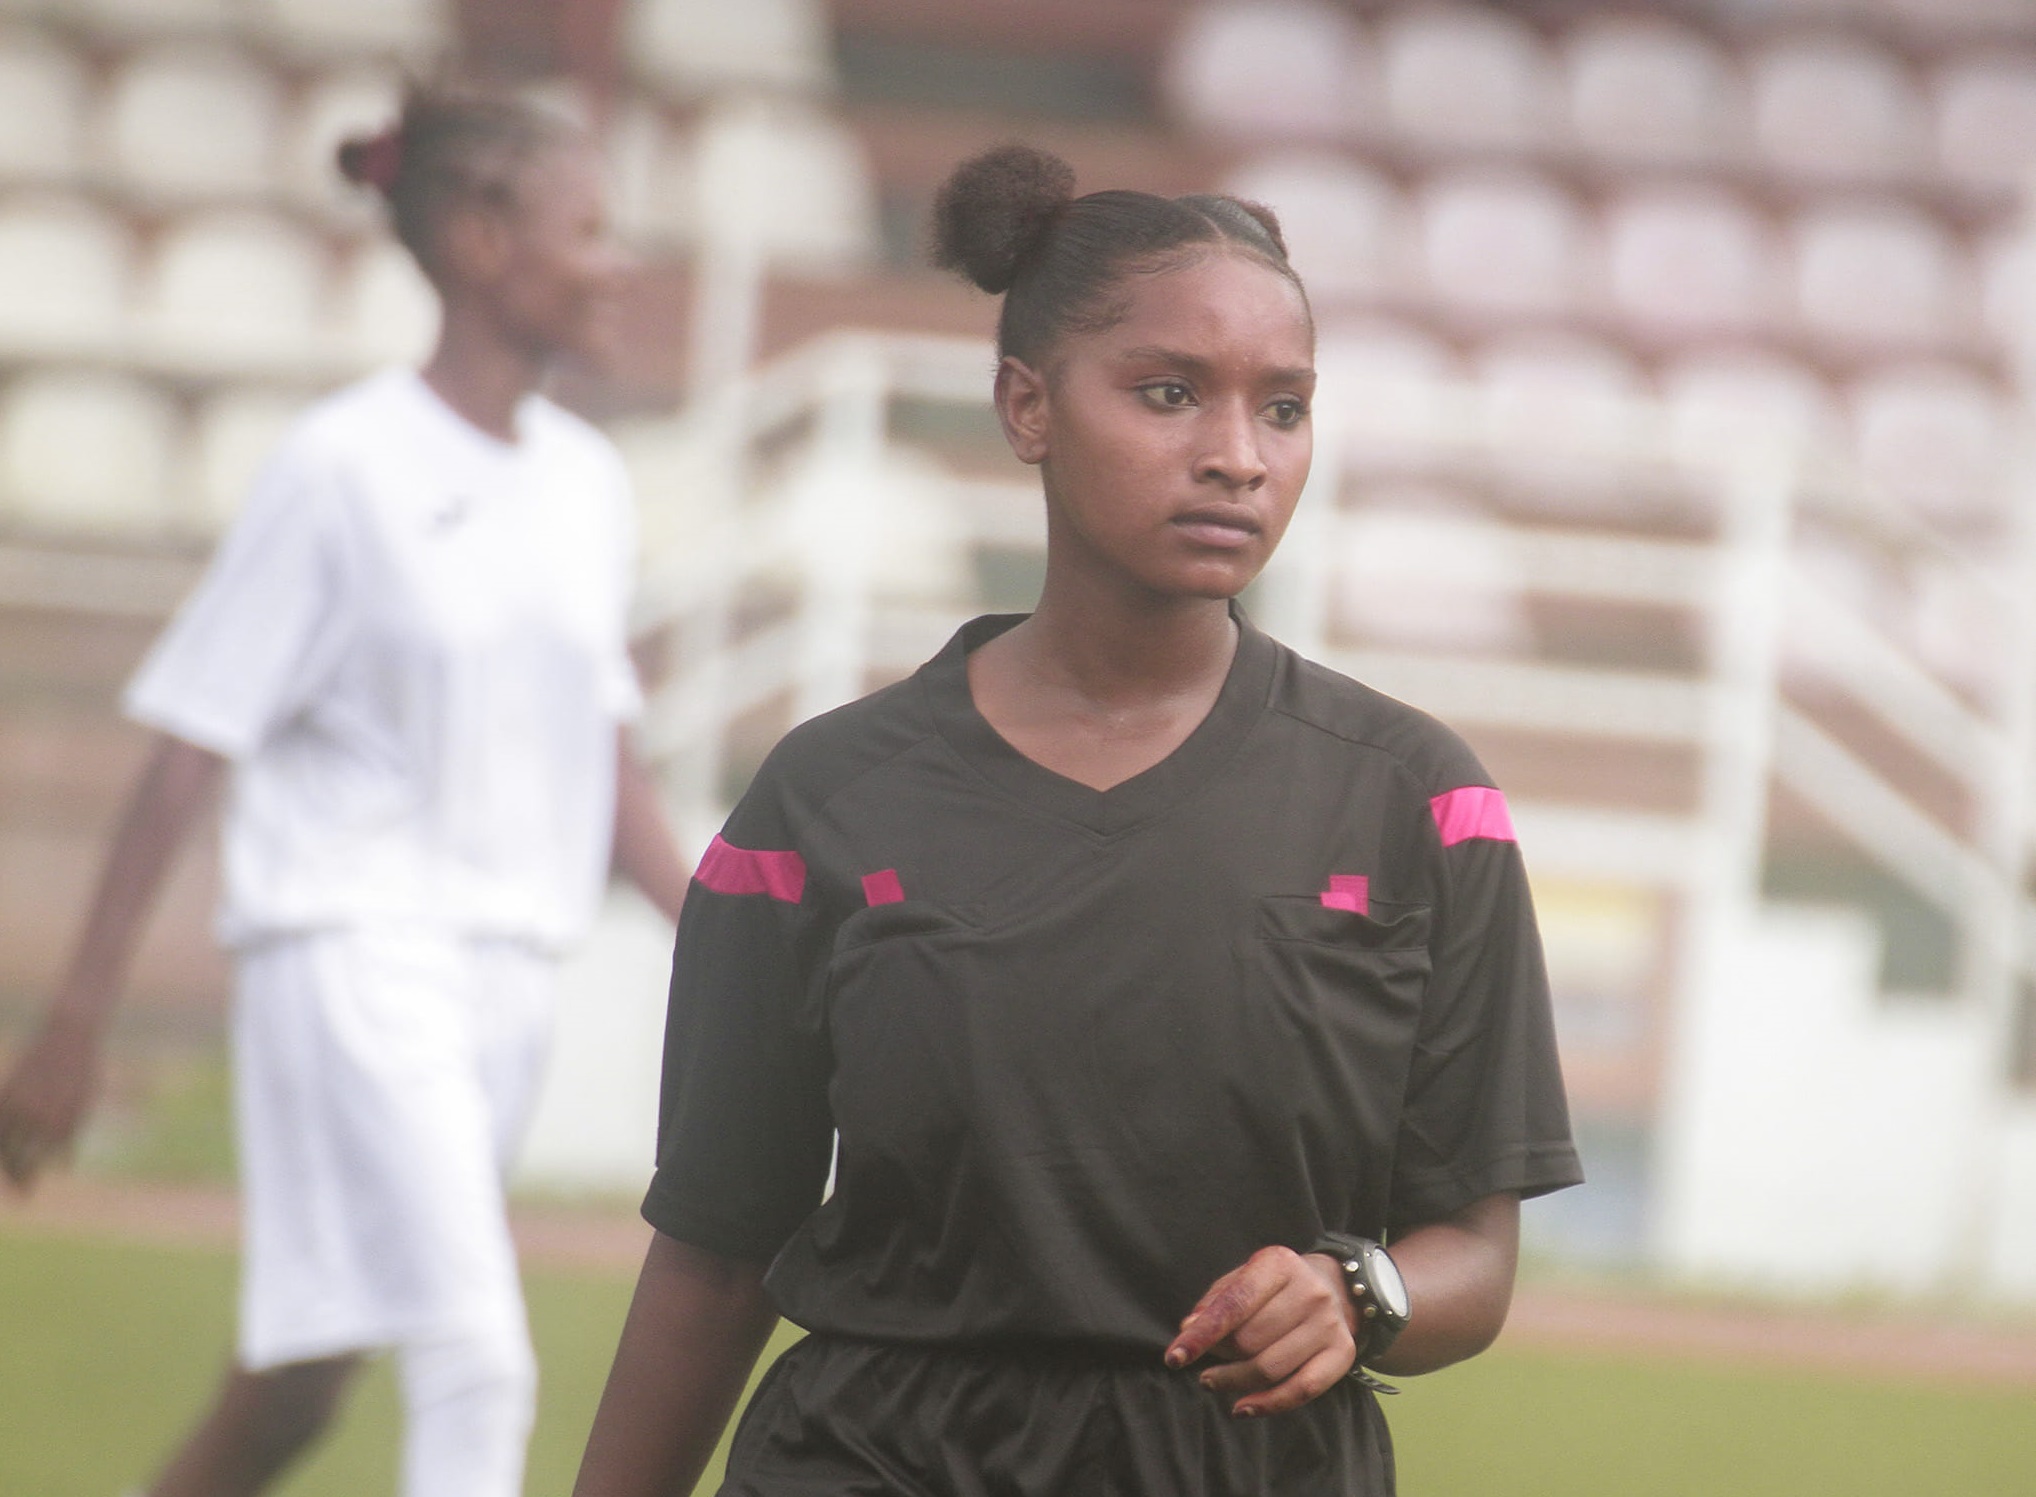 Championnat Scolaire, Deux jeunes arbitres retenus pour le Championnat Scolaire Africain, Comoros Football 269 | Portail du football des Comores